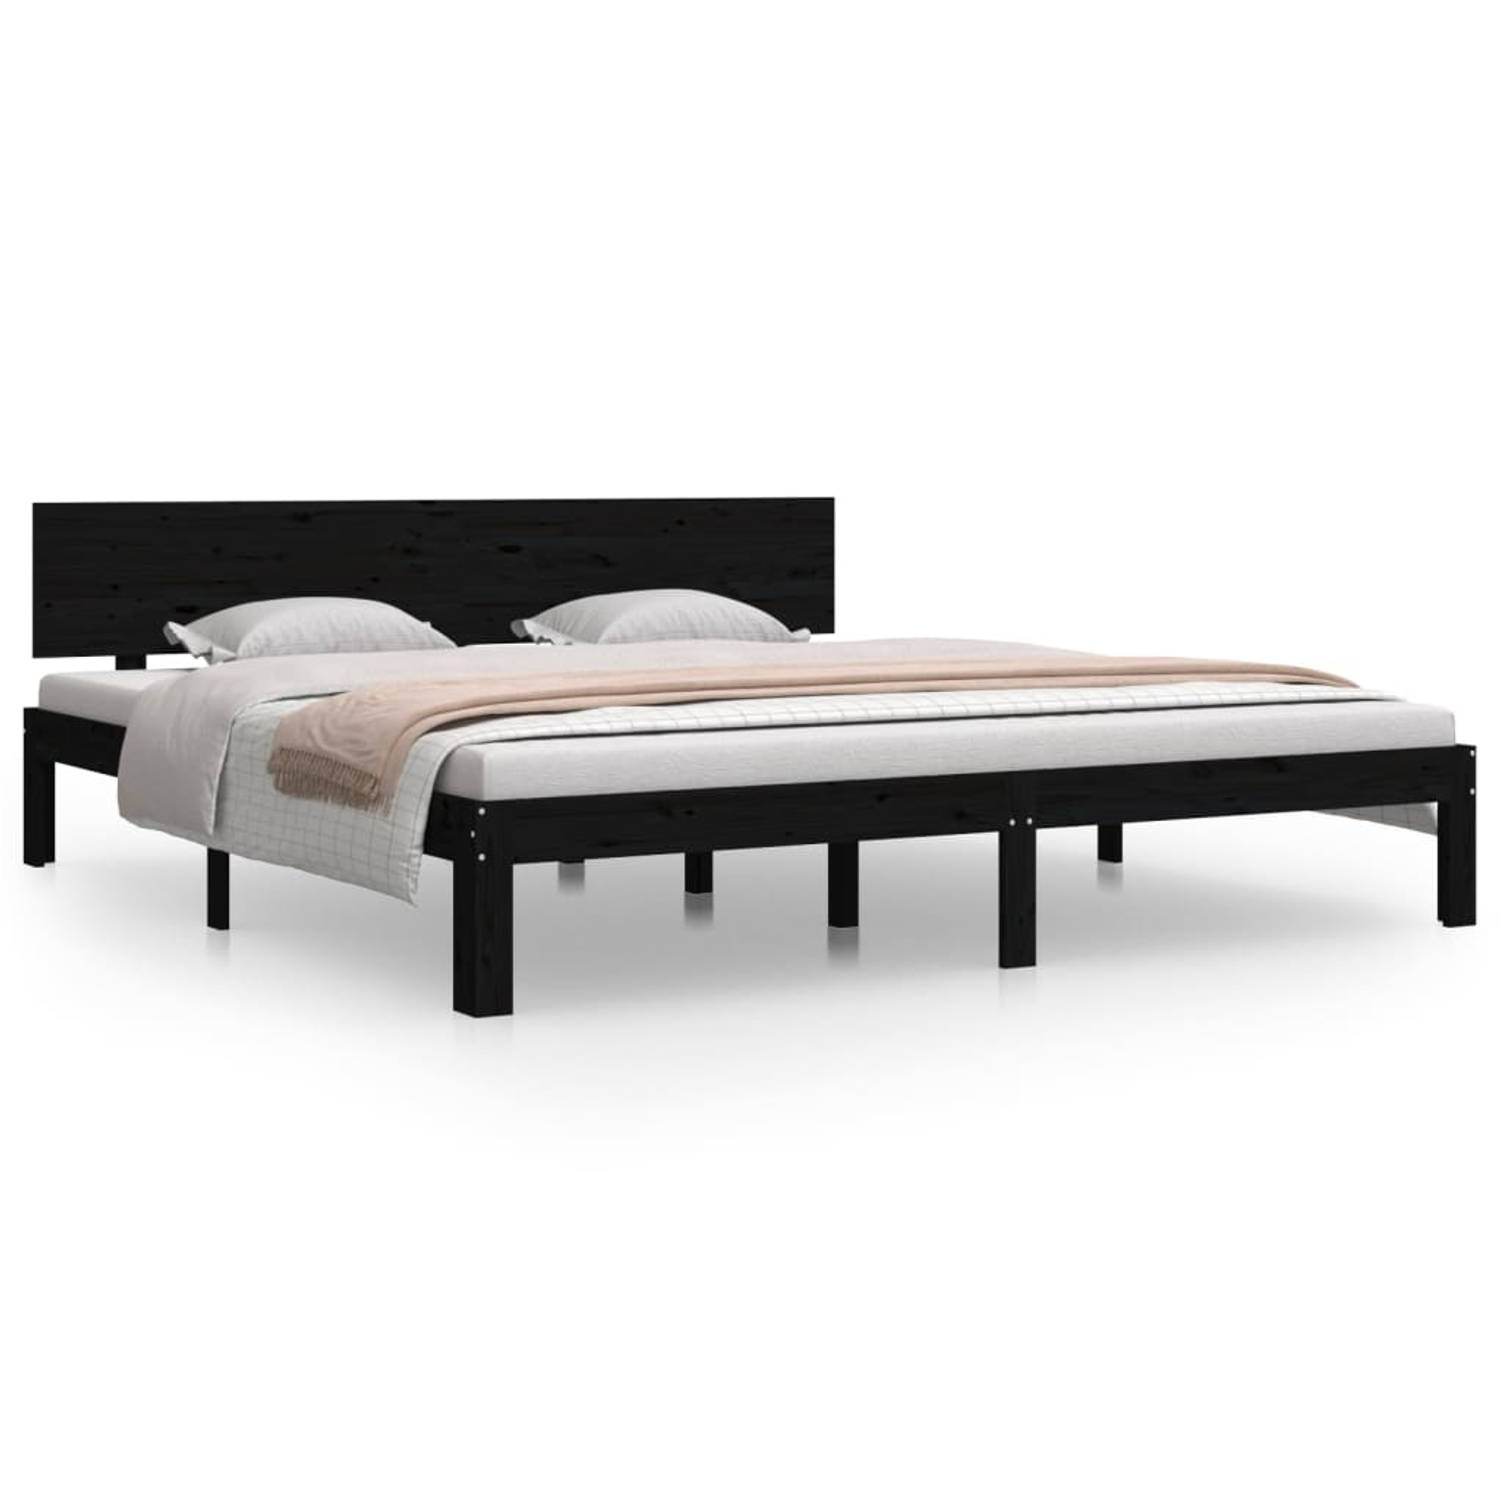 The Living Store Bedframe massief hout zwart 180x200 cm 6FT Super King - Bedframe - Bedframes - Bed - Bedbodem - Ledikant - Bed Frame - Massief Houten Bedframe - Slaapmeubel - Bedd